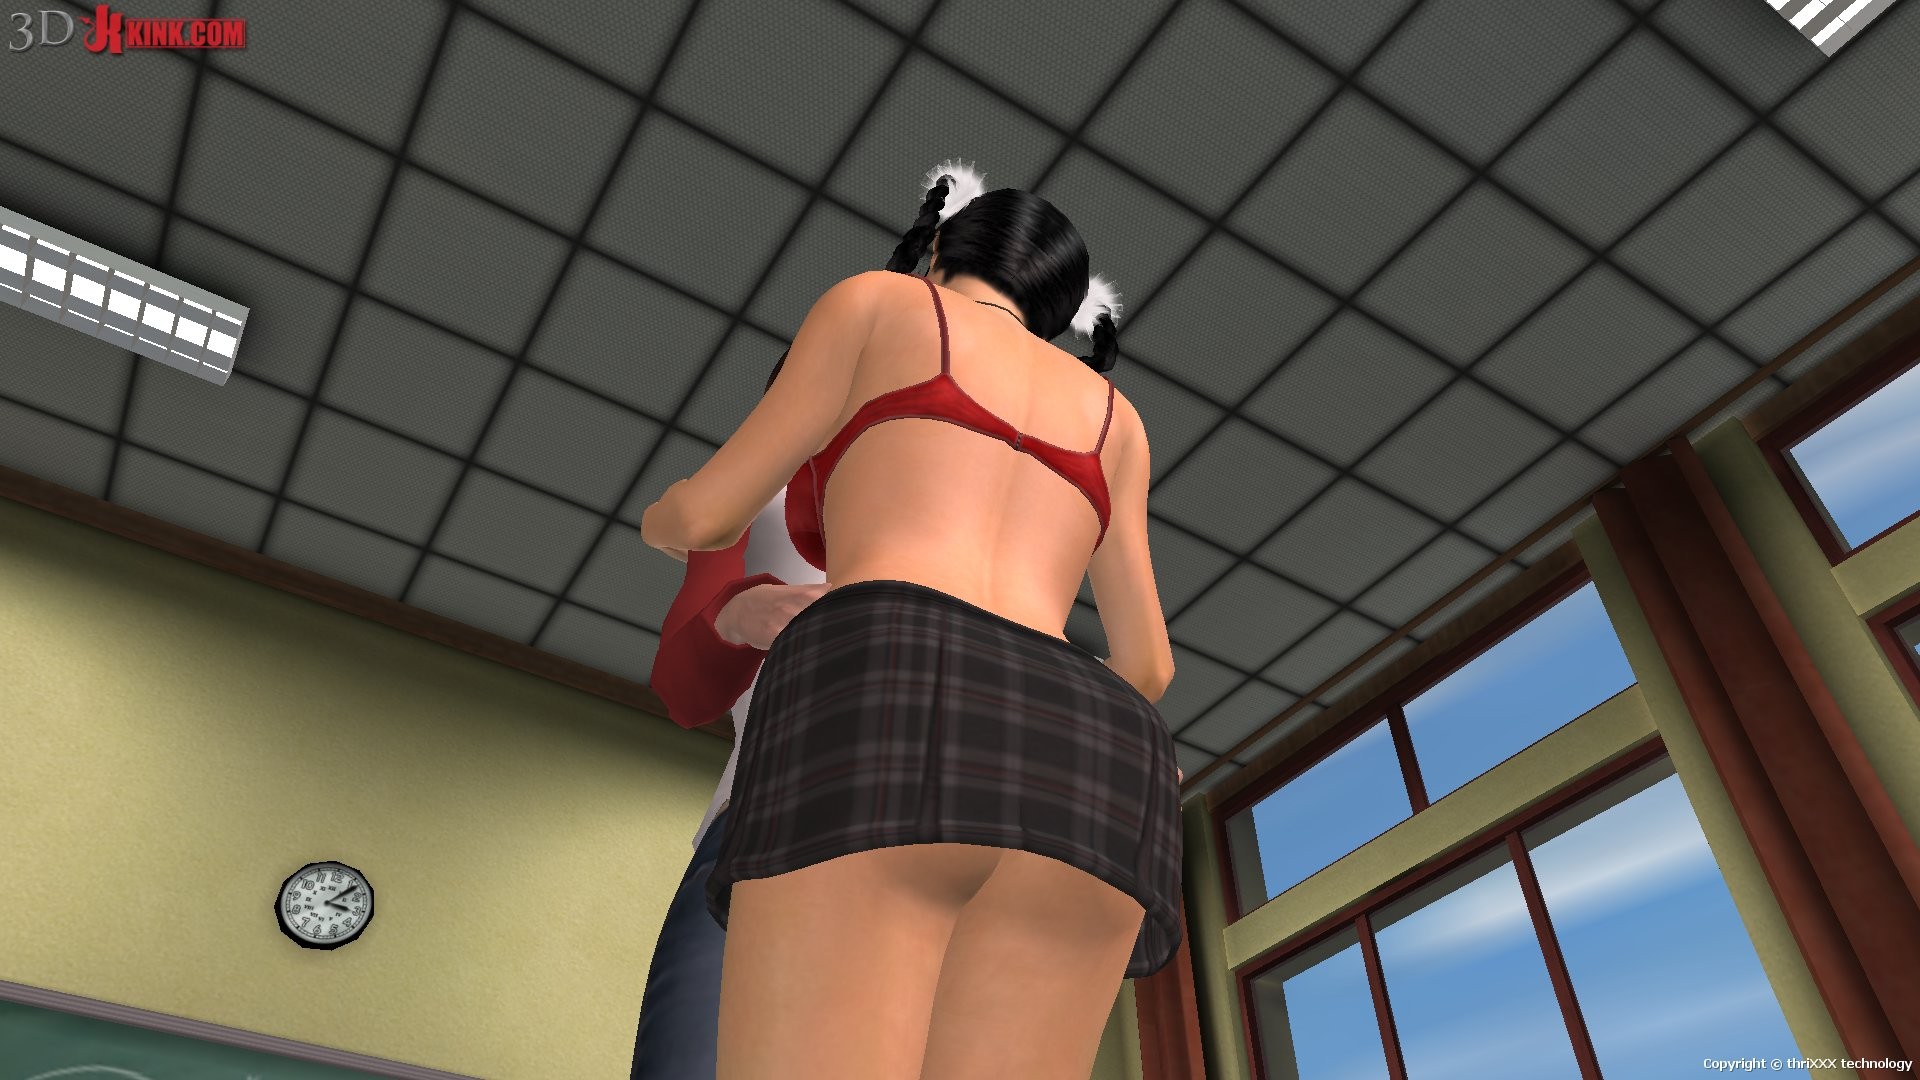 Action sexuelle bdsm chaude créée dans un jeu sexuel 3d fétichiste virtuel !
 #69625952